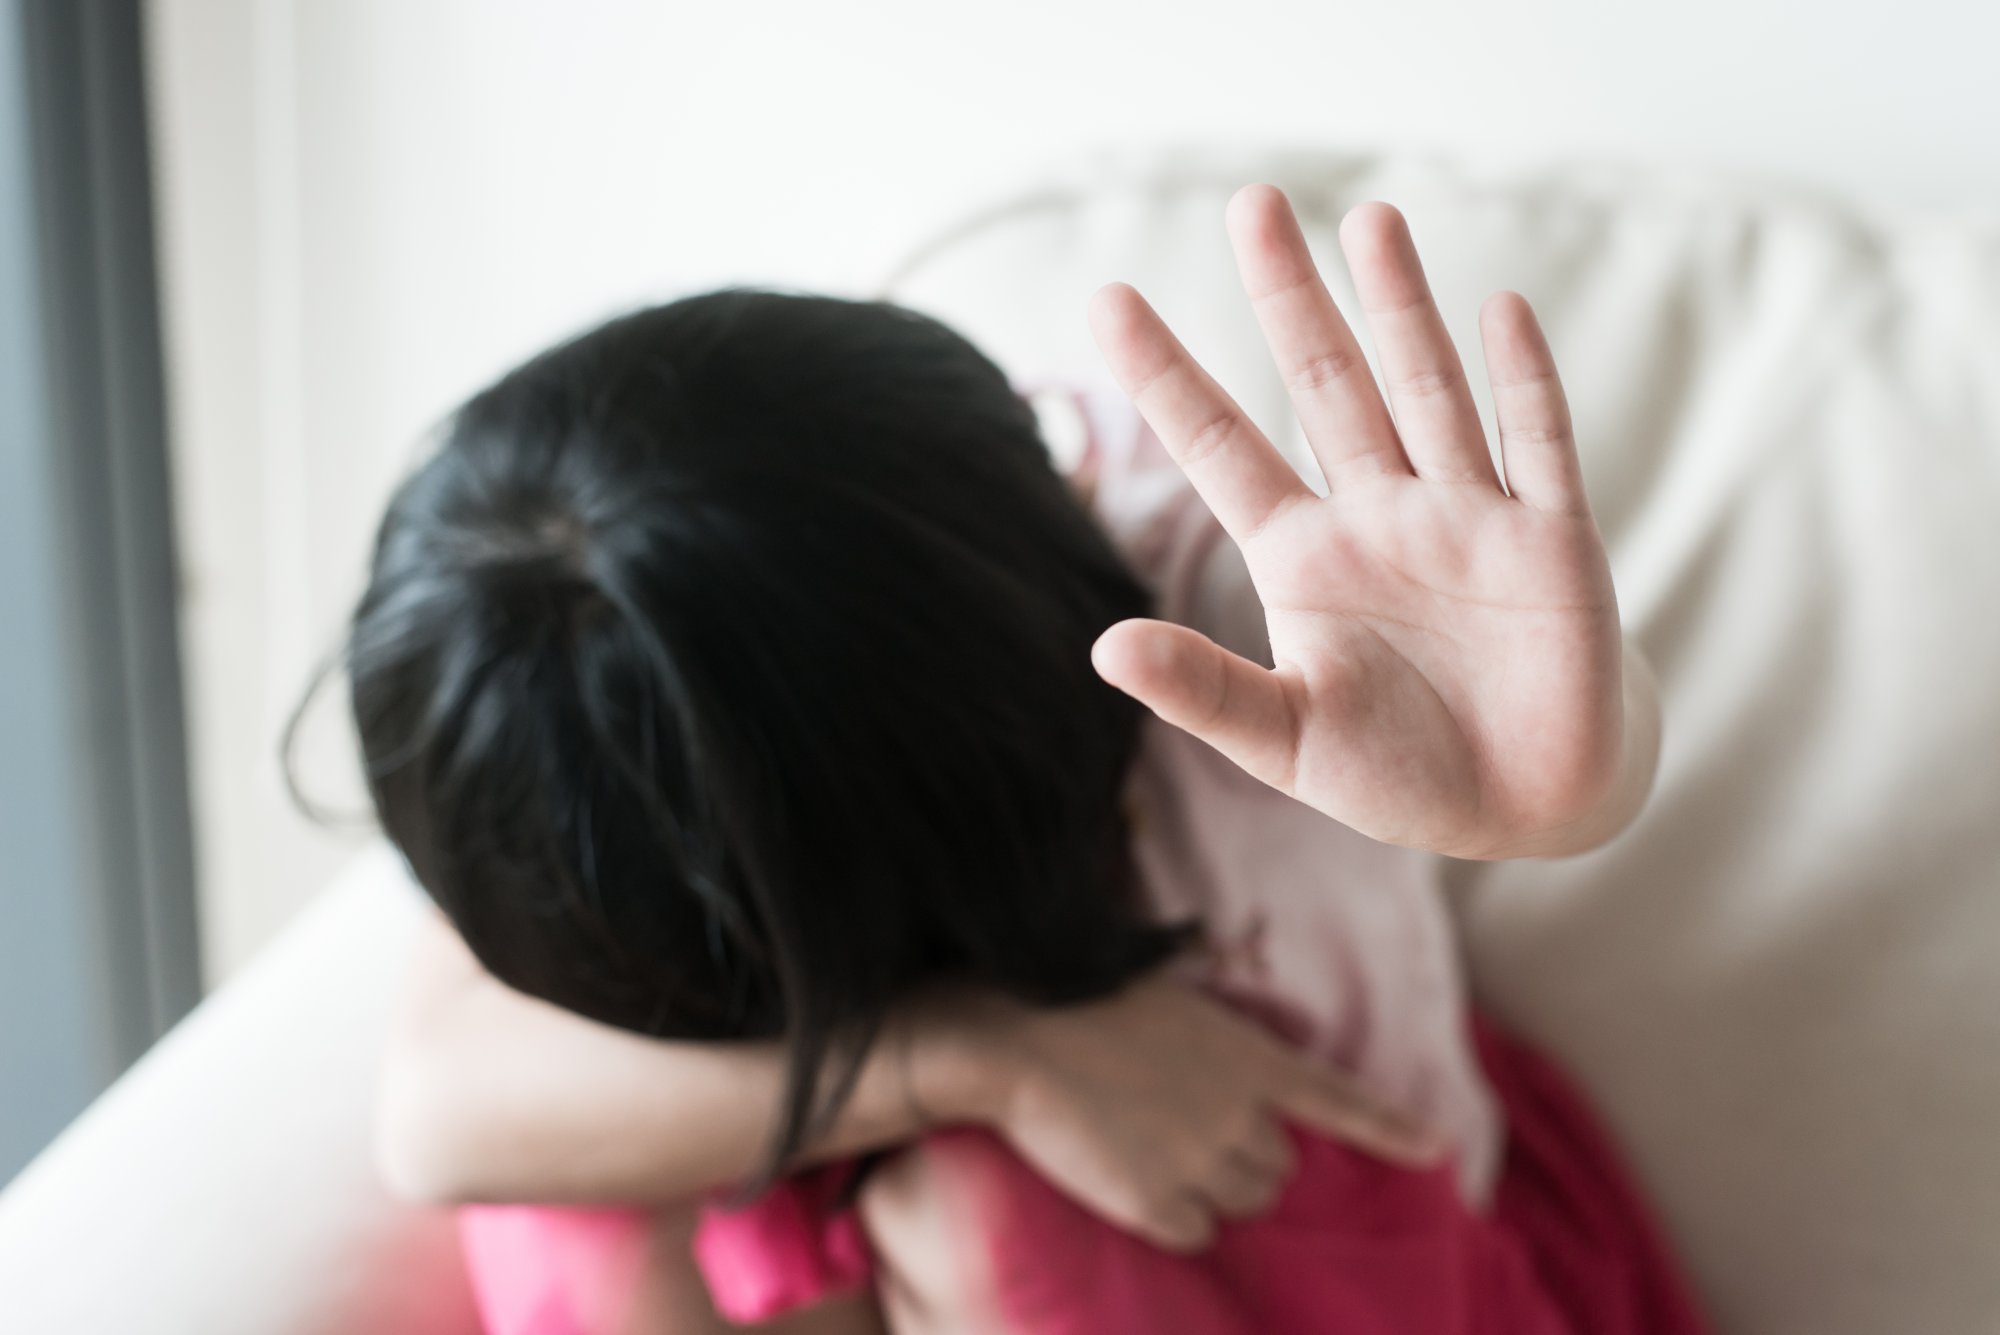 Ρέθυμνο: Ανήλικη θύμα σεξουαλικής κακοποίησης - Δικογραφία για 12 άτομα